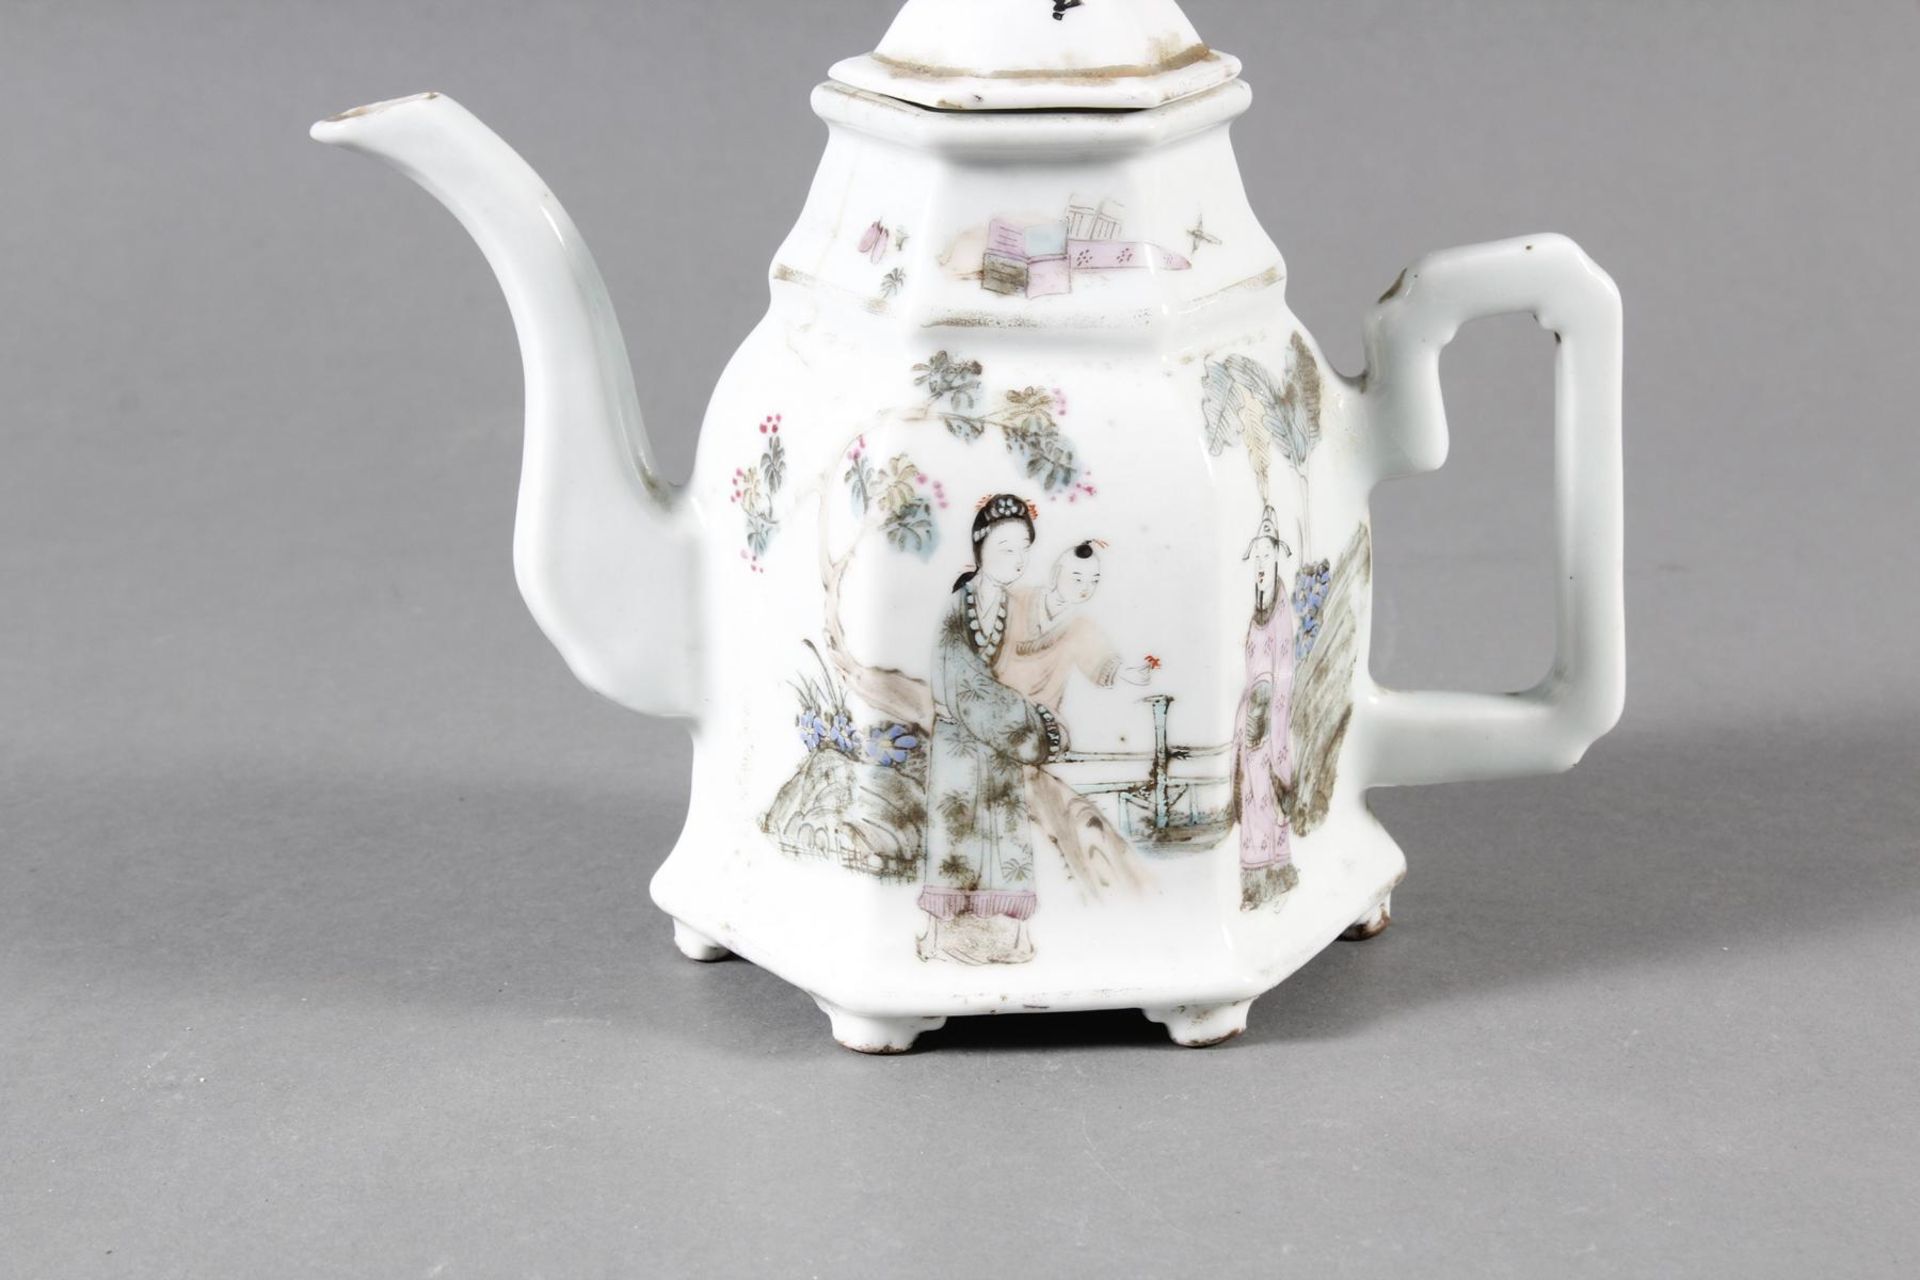 Porzellan Teekann, China, 19. Jahrhundert - Image 2 of 15